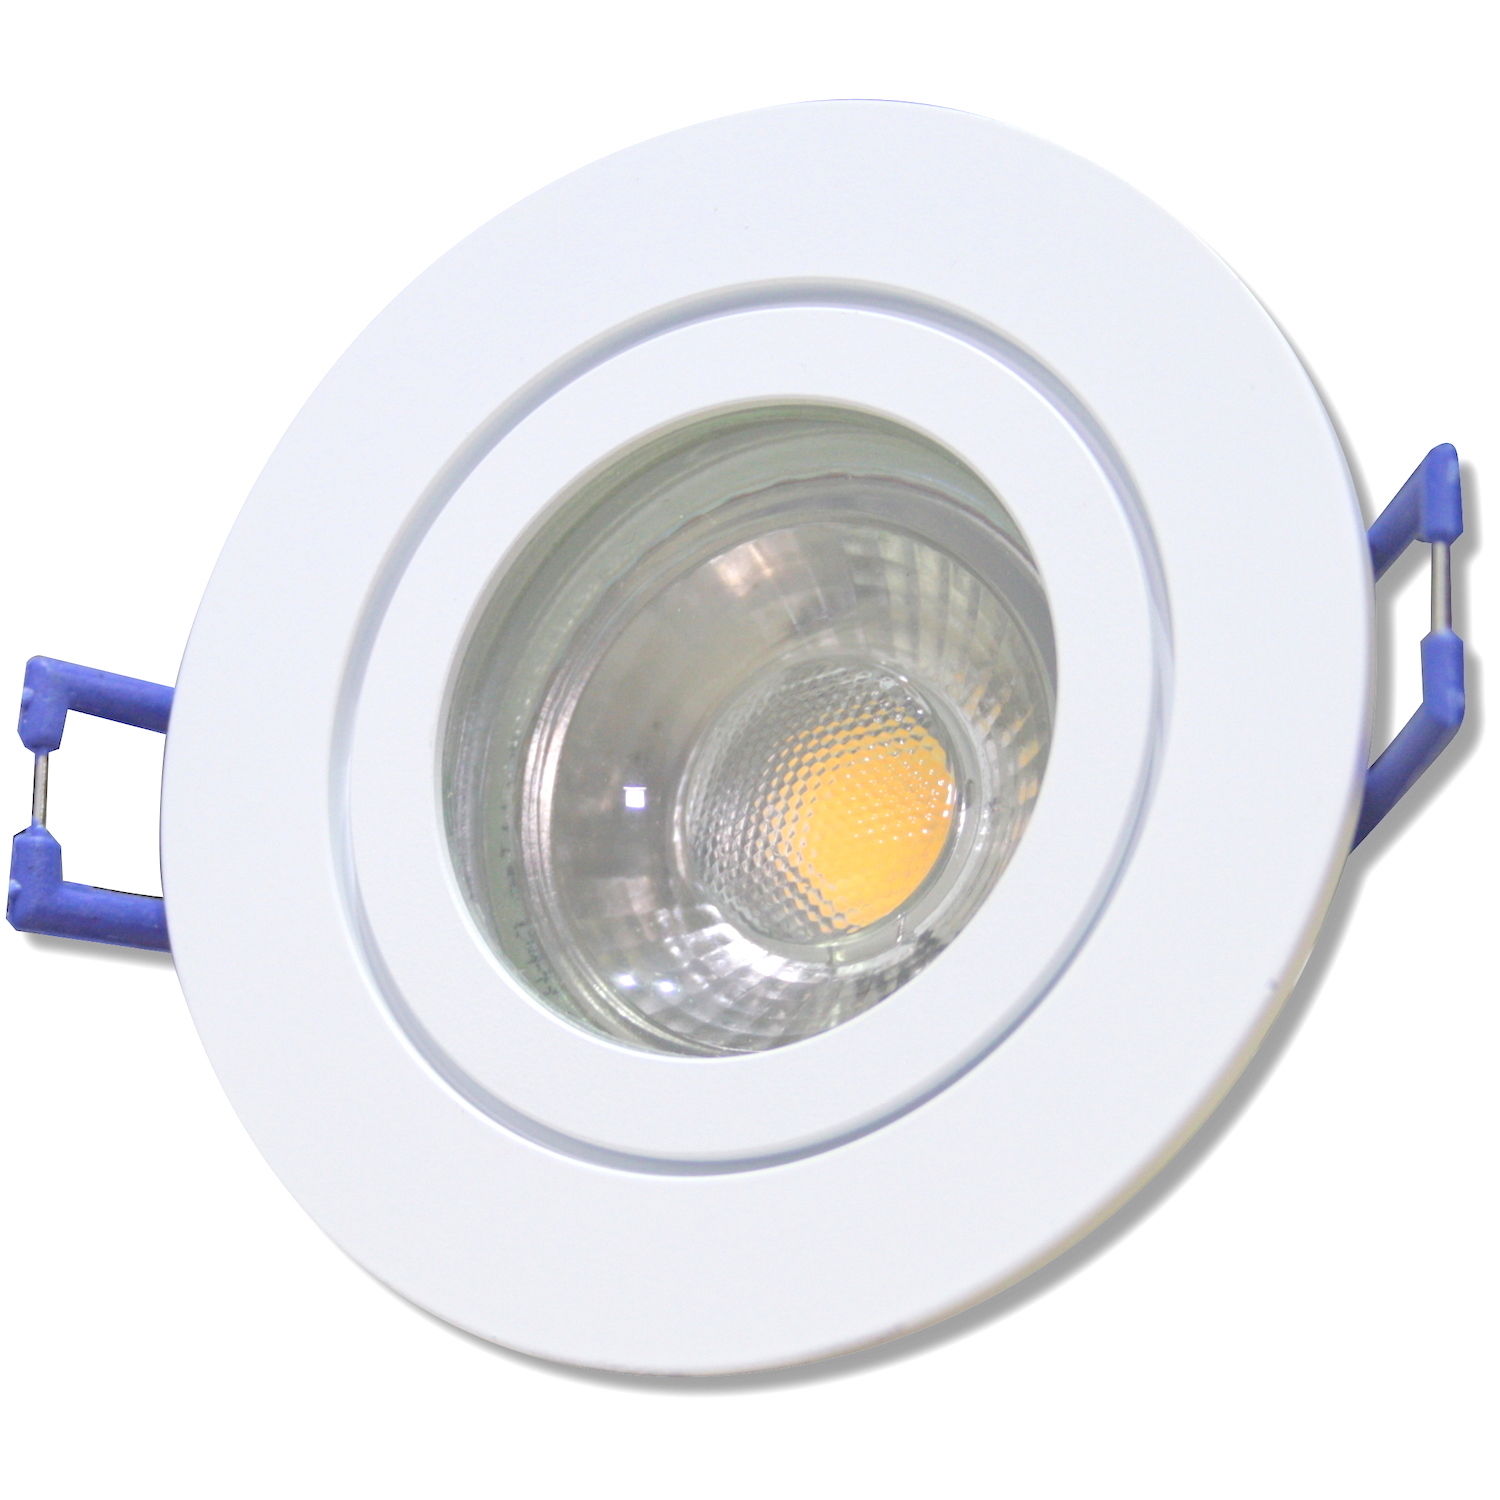 3er Set LED Lichtpunkte 3W Strahler vorverdrahtet 12Volt IP44 inkl LED-Treiber 